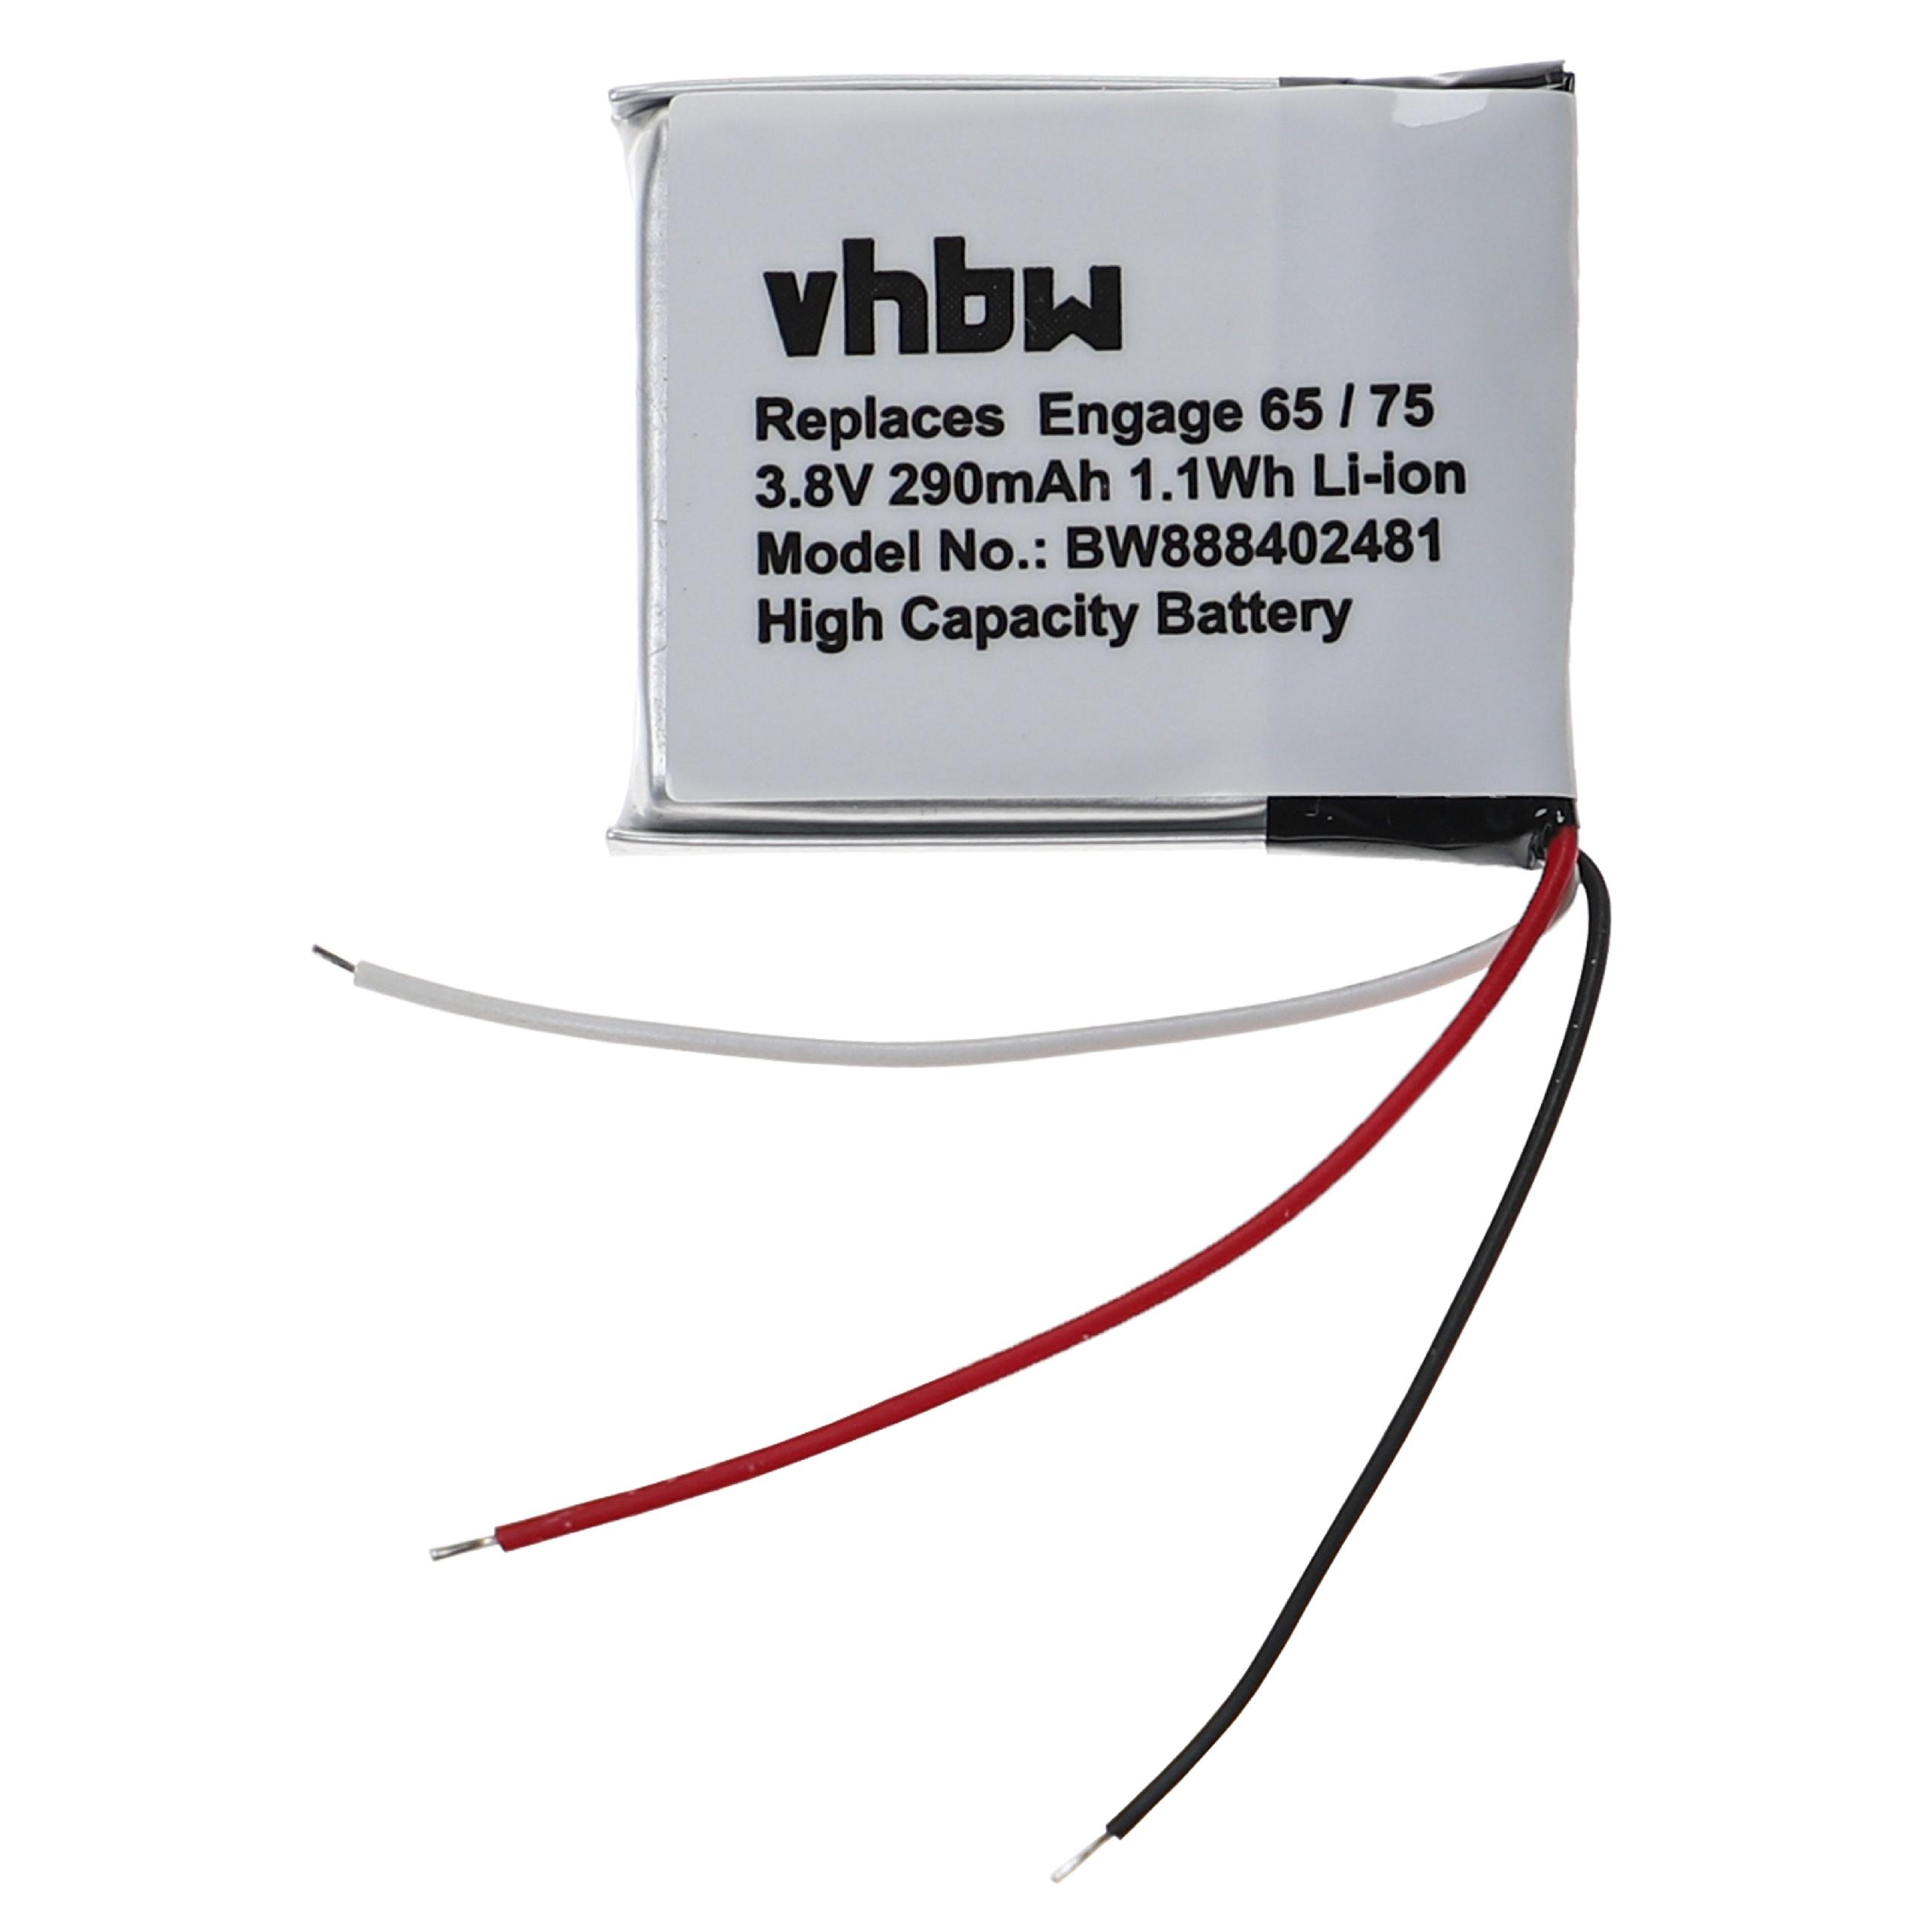 Batterie pour Jabra Engage 65, 75 pour casque audio - 290mAh 3,8V Li-ion